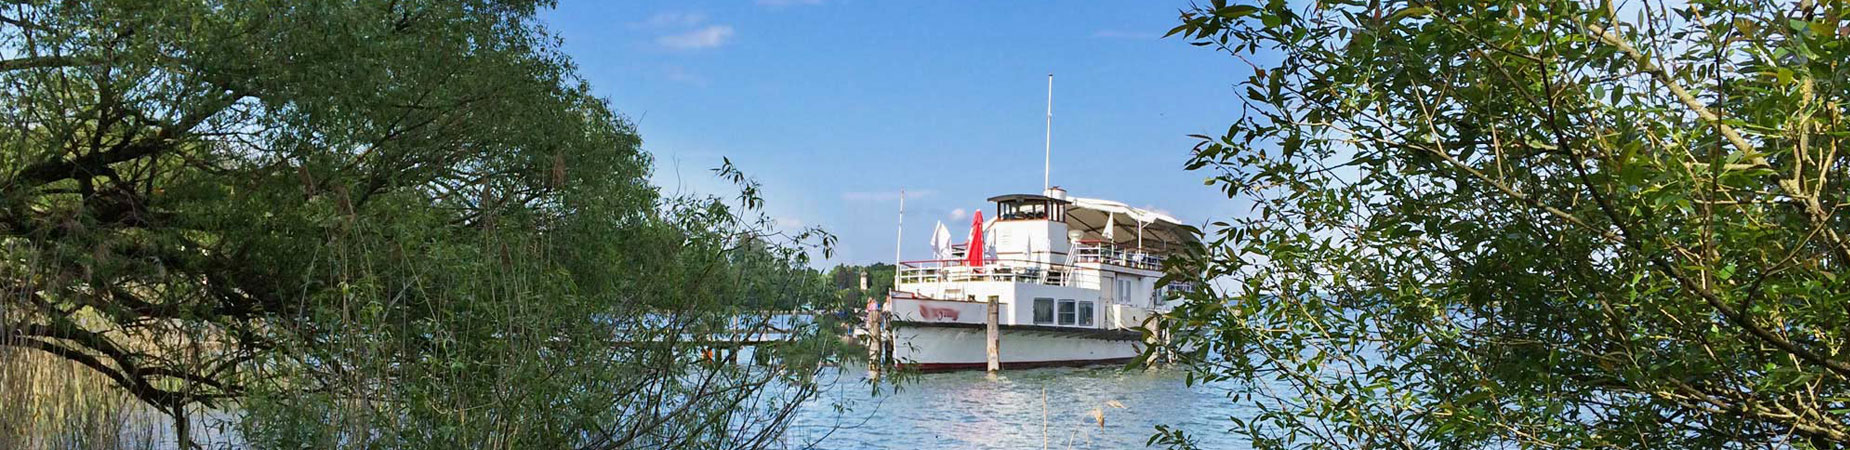 Hochzeitsschiff am Starnberger See